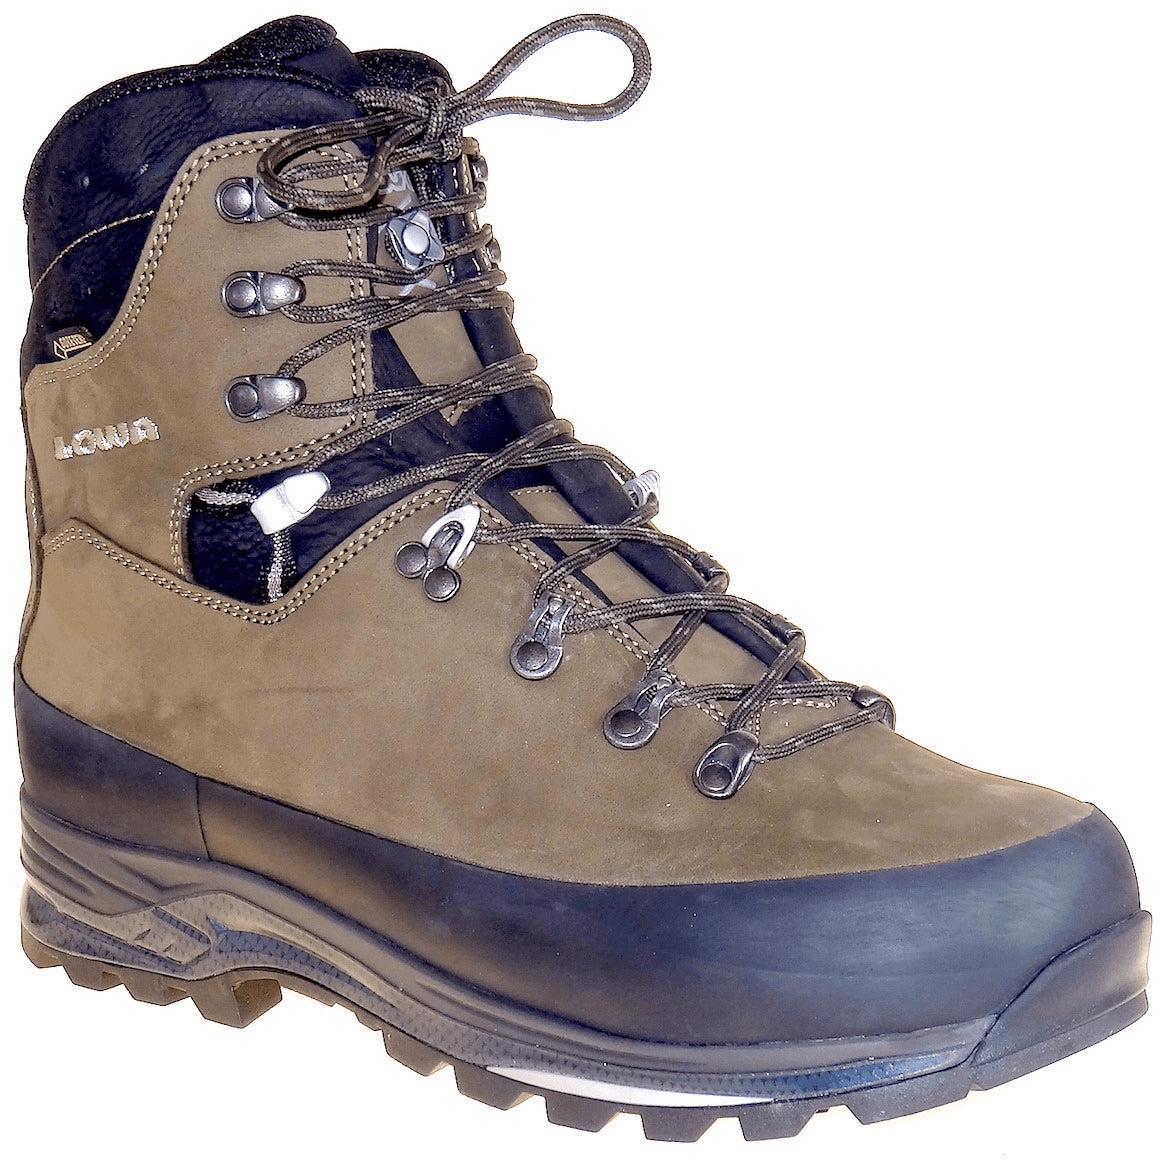 LOWA, Tibet GTX, WXL-Wide Fit, Men's, Sepia/Black Hiking Boots LOWA Sepia/Black 6.5UK 